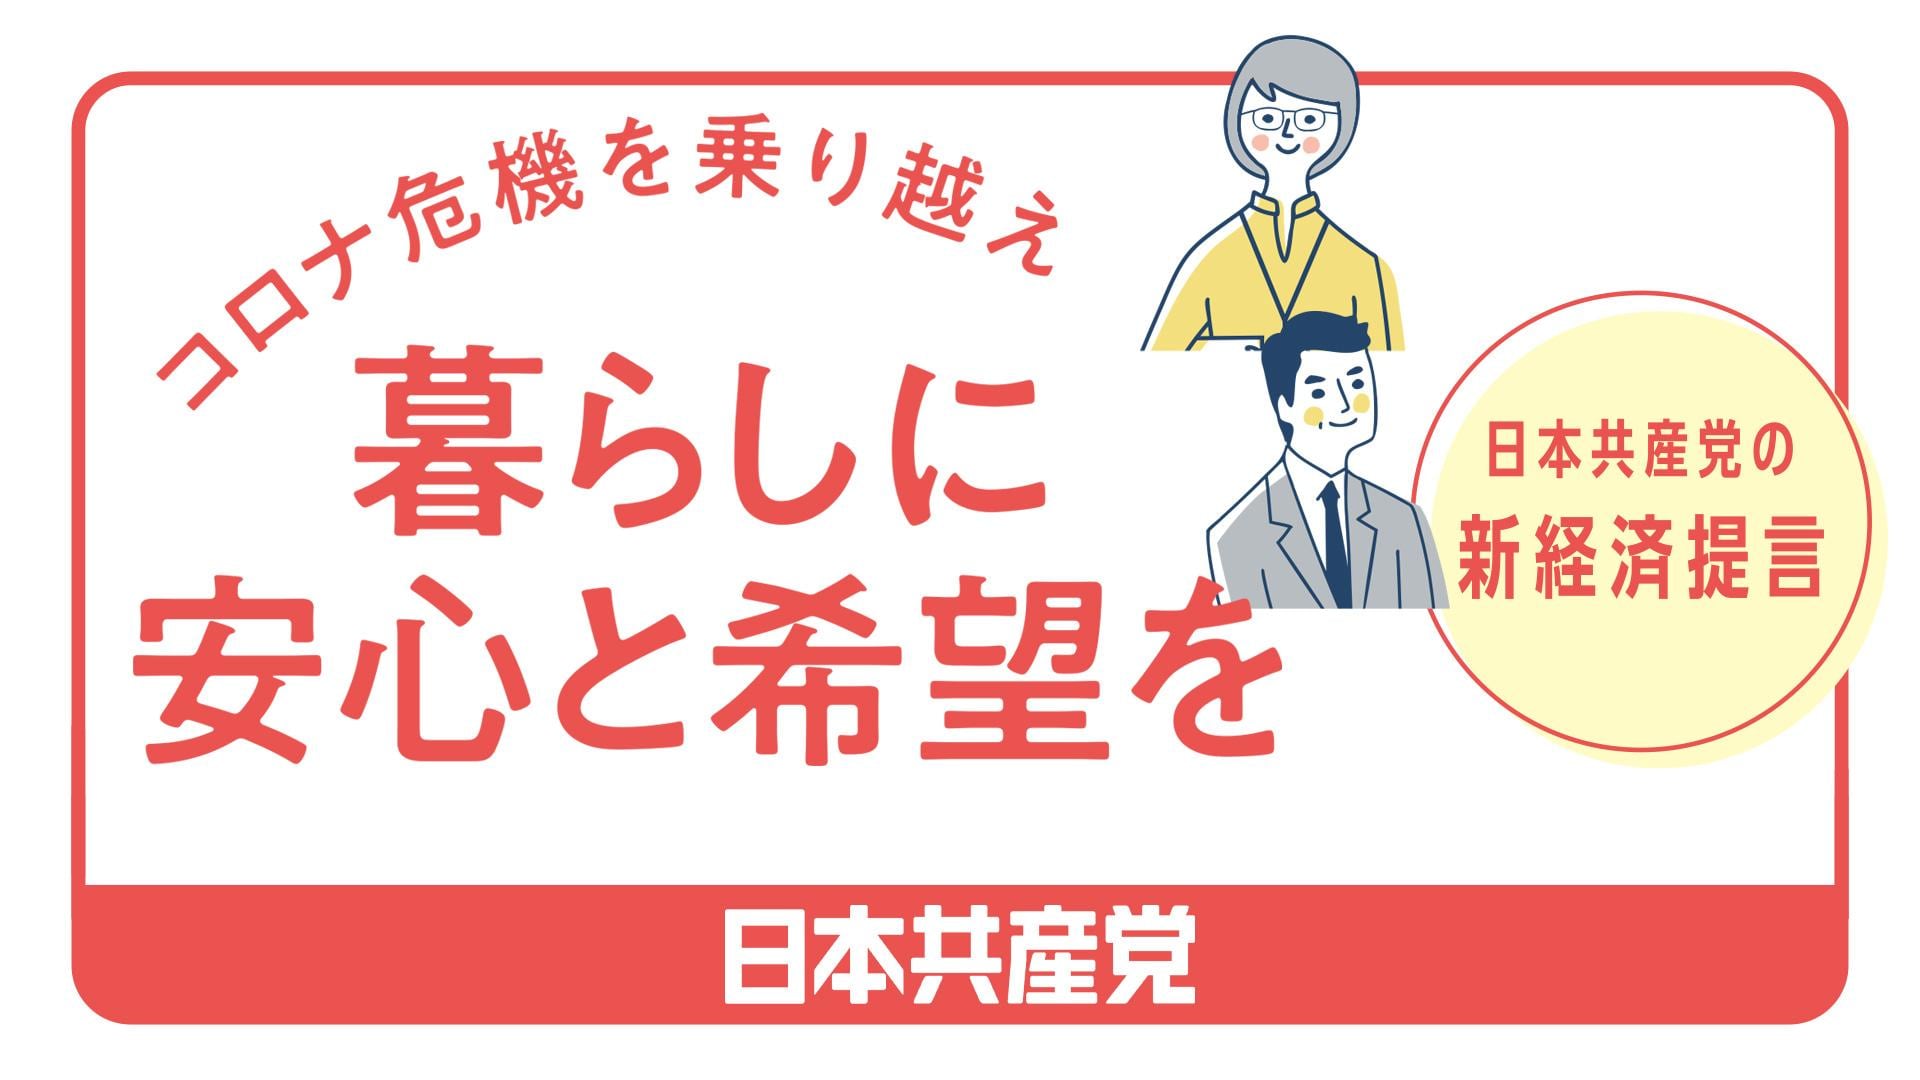 総選挙政策コロナ危機を乗り越え、暮らしに安心と希望を――日本共産党の新経済提言　2021総選挙